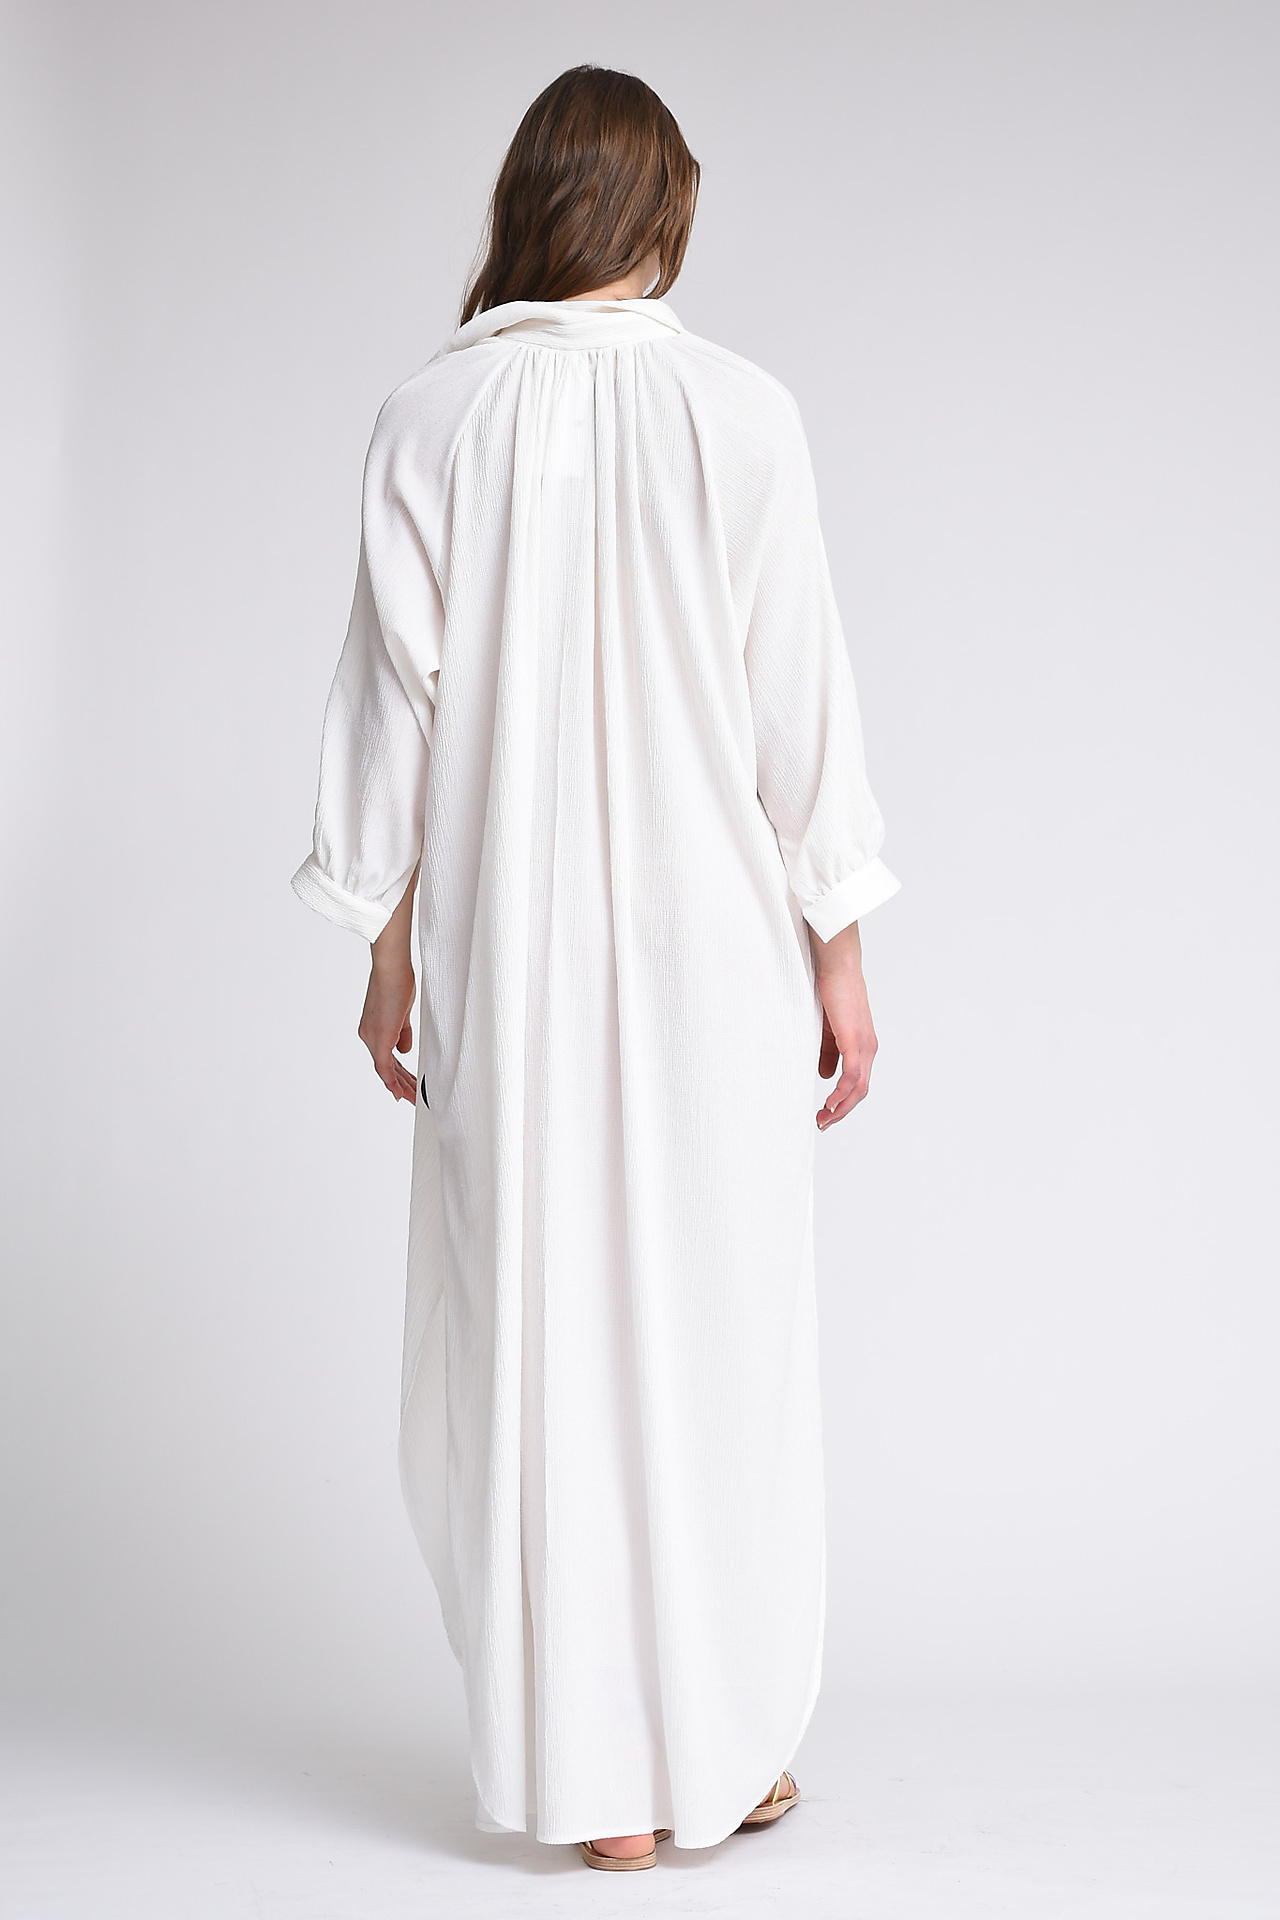 AVDW Dresses White